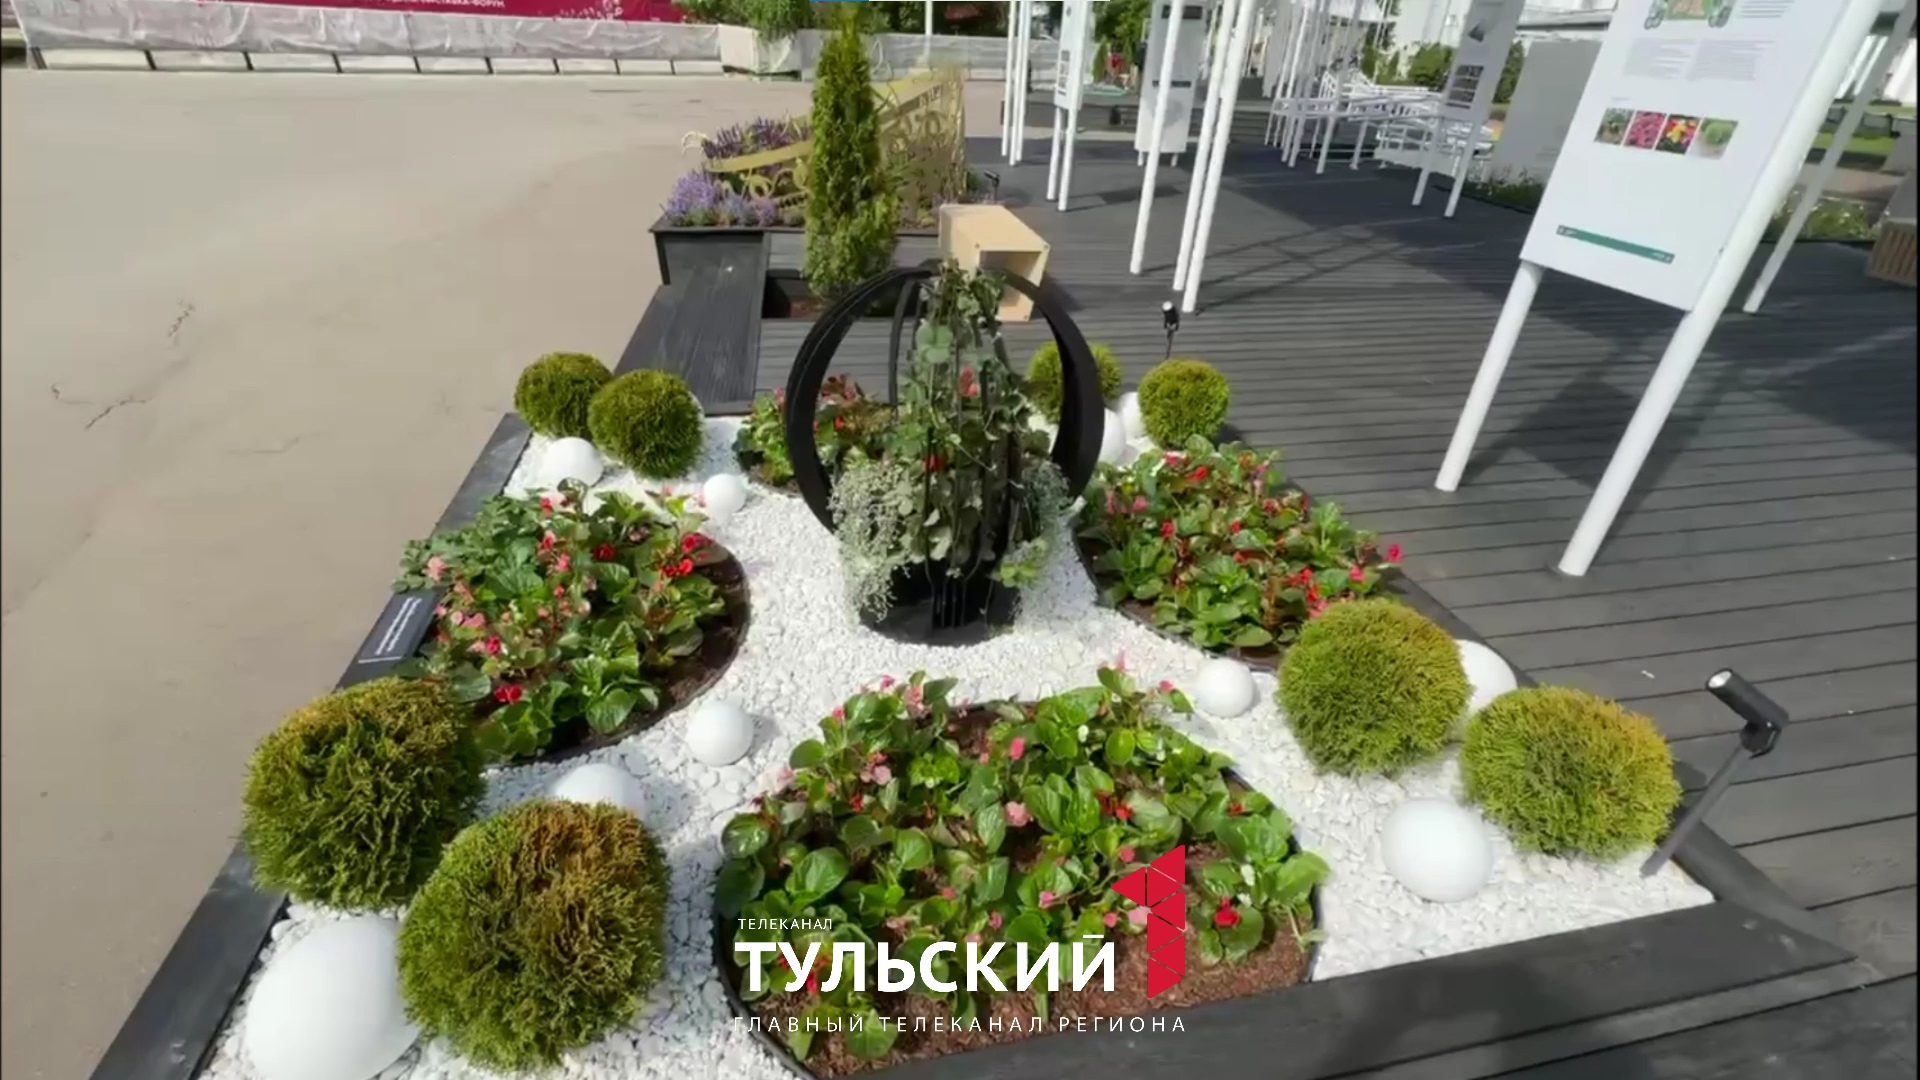 Тульская область представила свою клумбу на фестивале цветов на выставке "Россия"